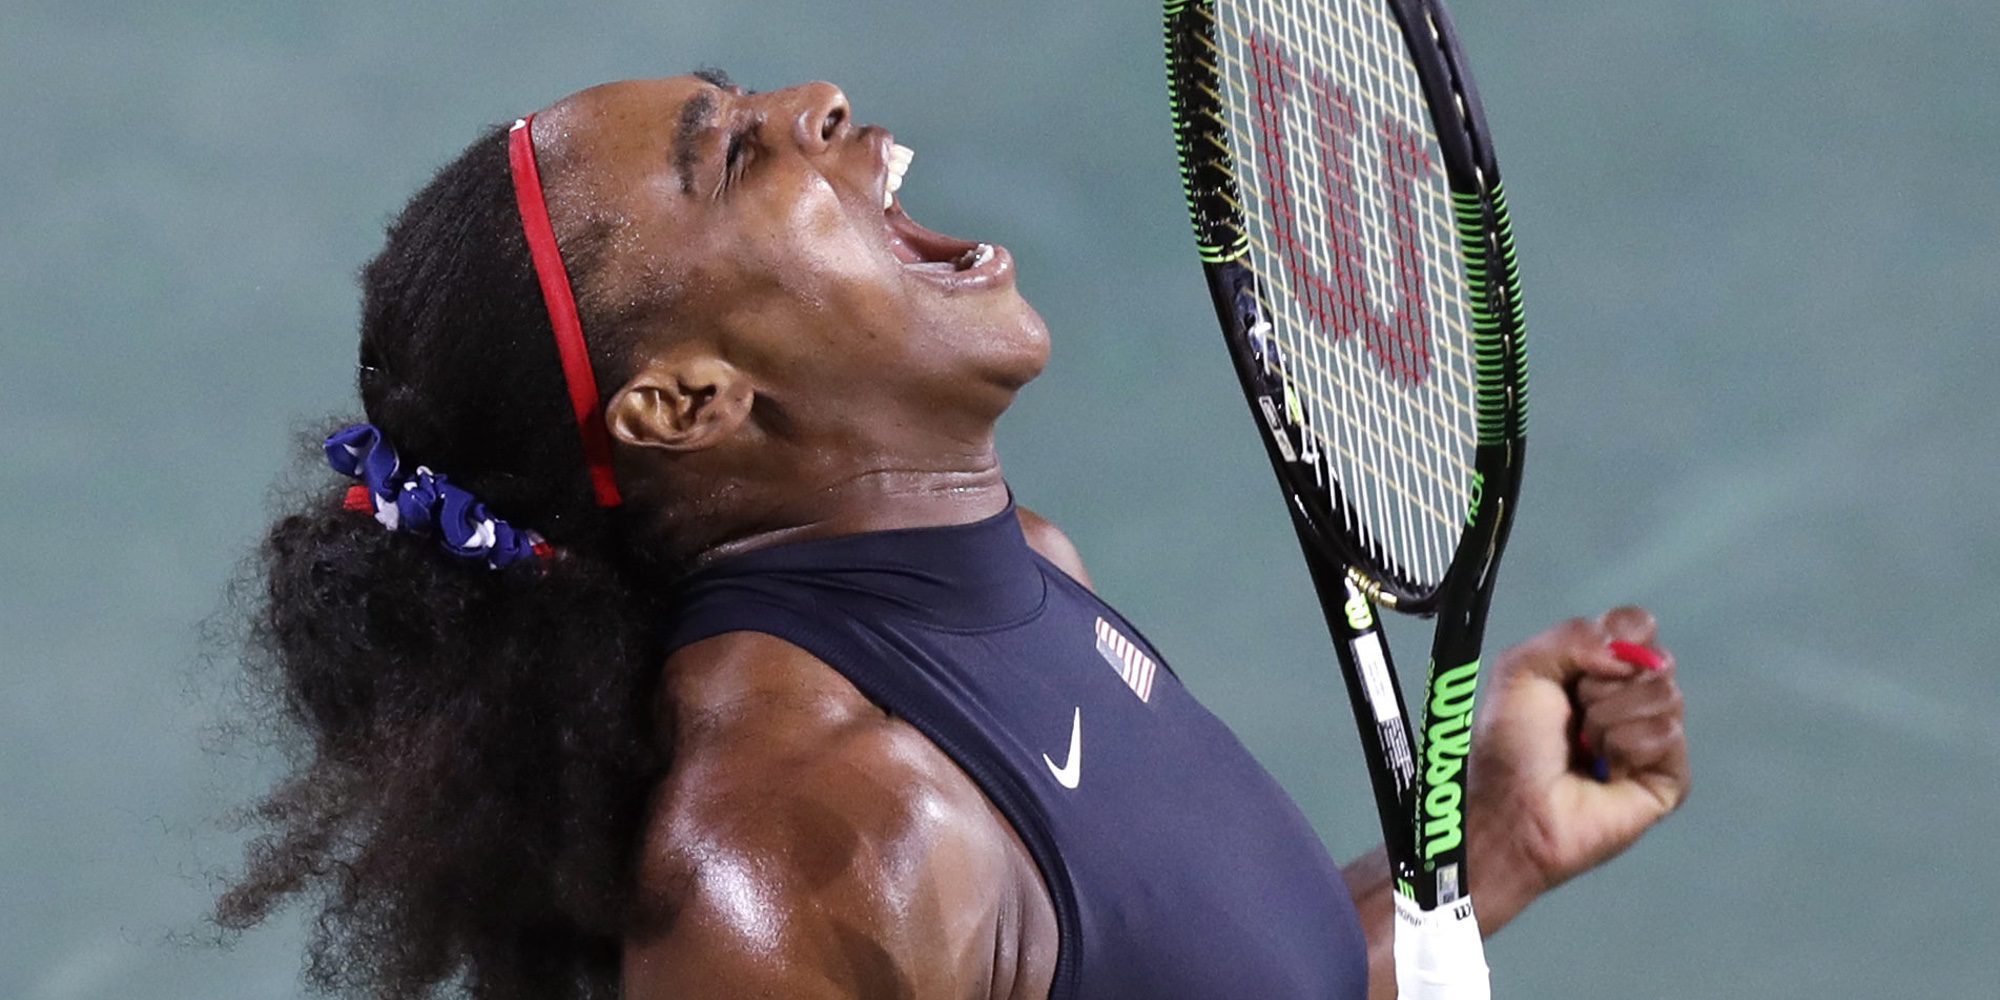 Serena Williams responde a John McEnroe tras su comentario machista contra ella: "Respétame"